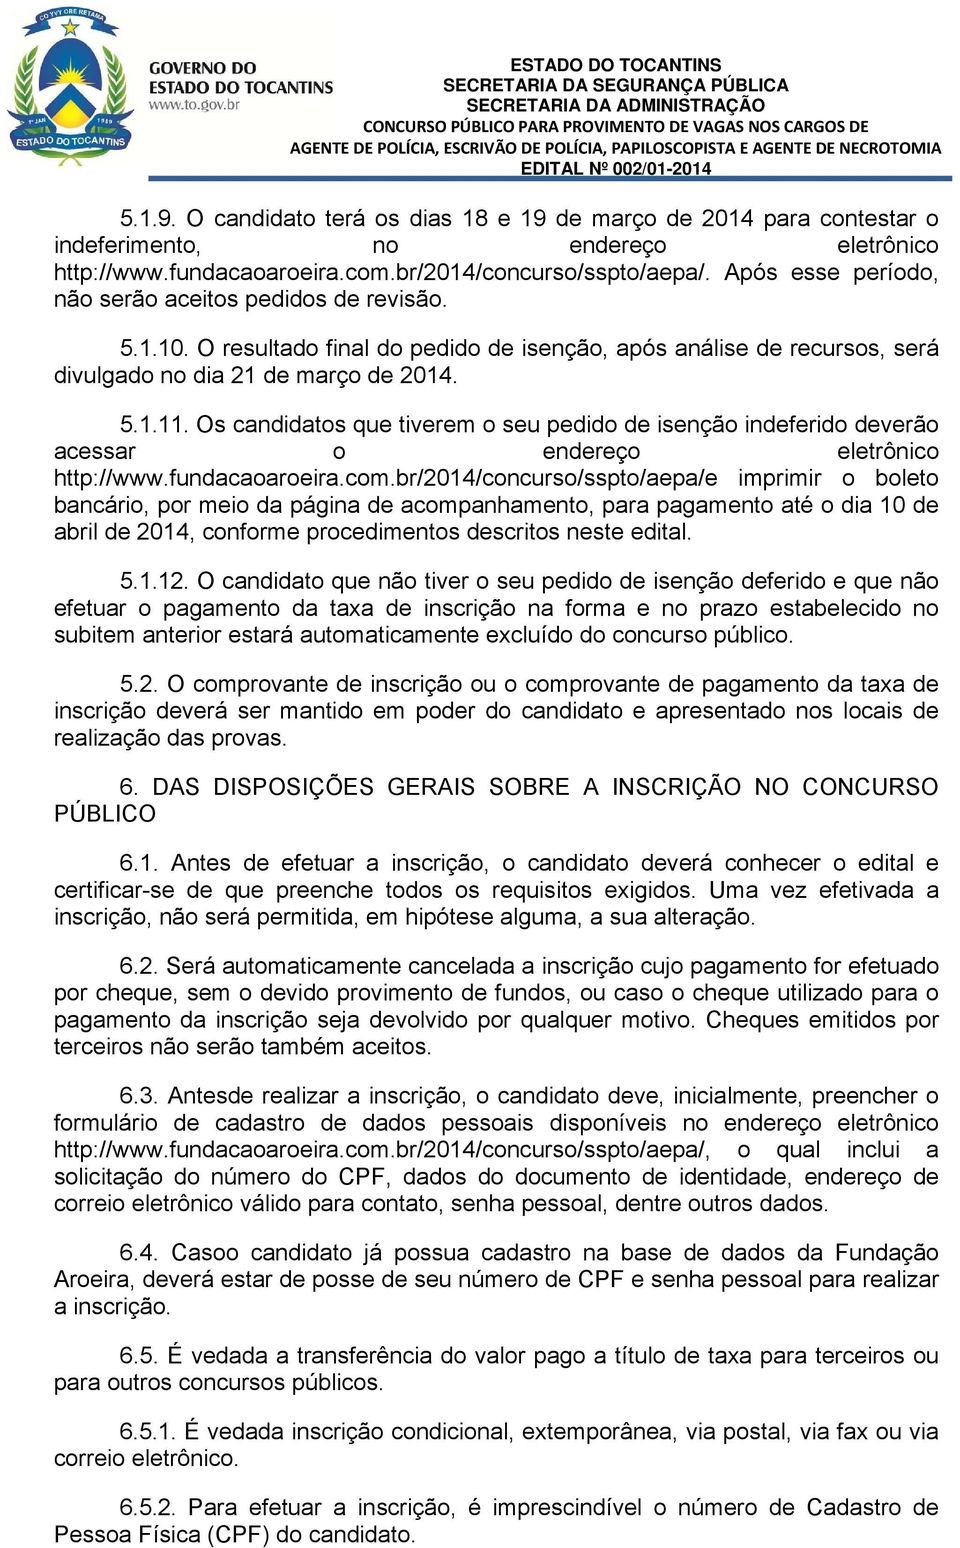 Os candidatos que tiverem o seu pedido de isenção indeferido deverão acessar o endereço eletrônico http://www.fundacaoaroeira.com.